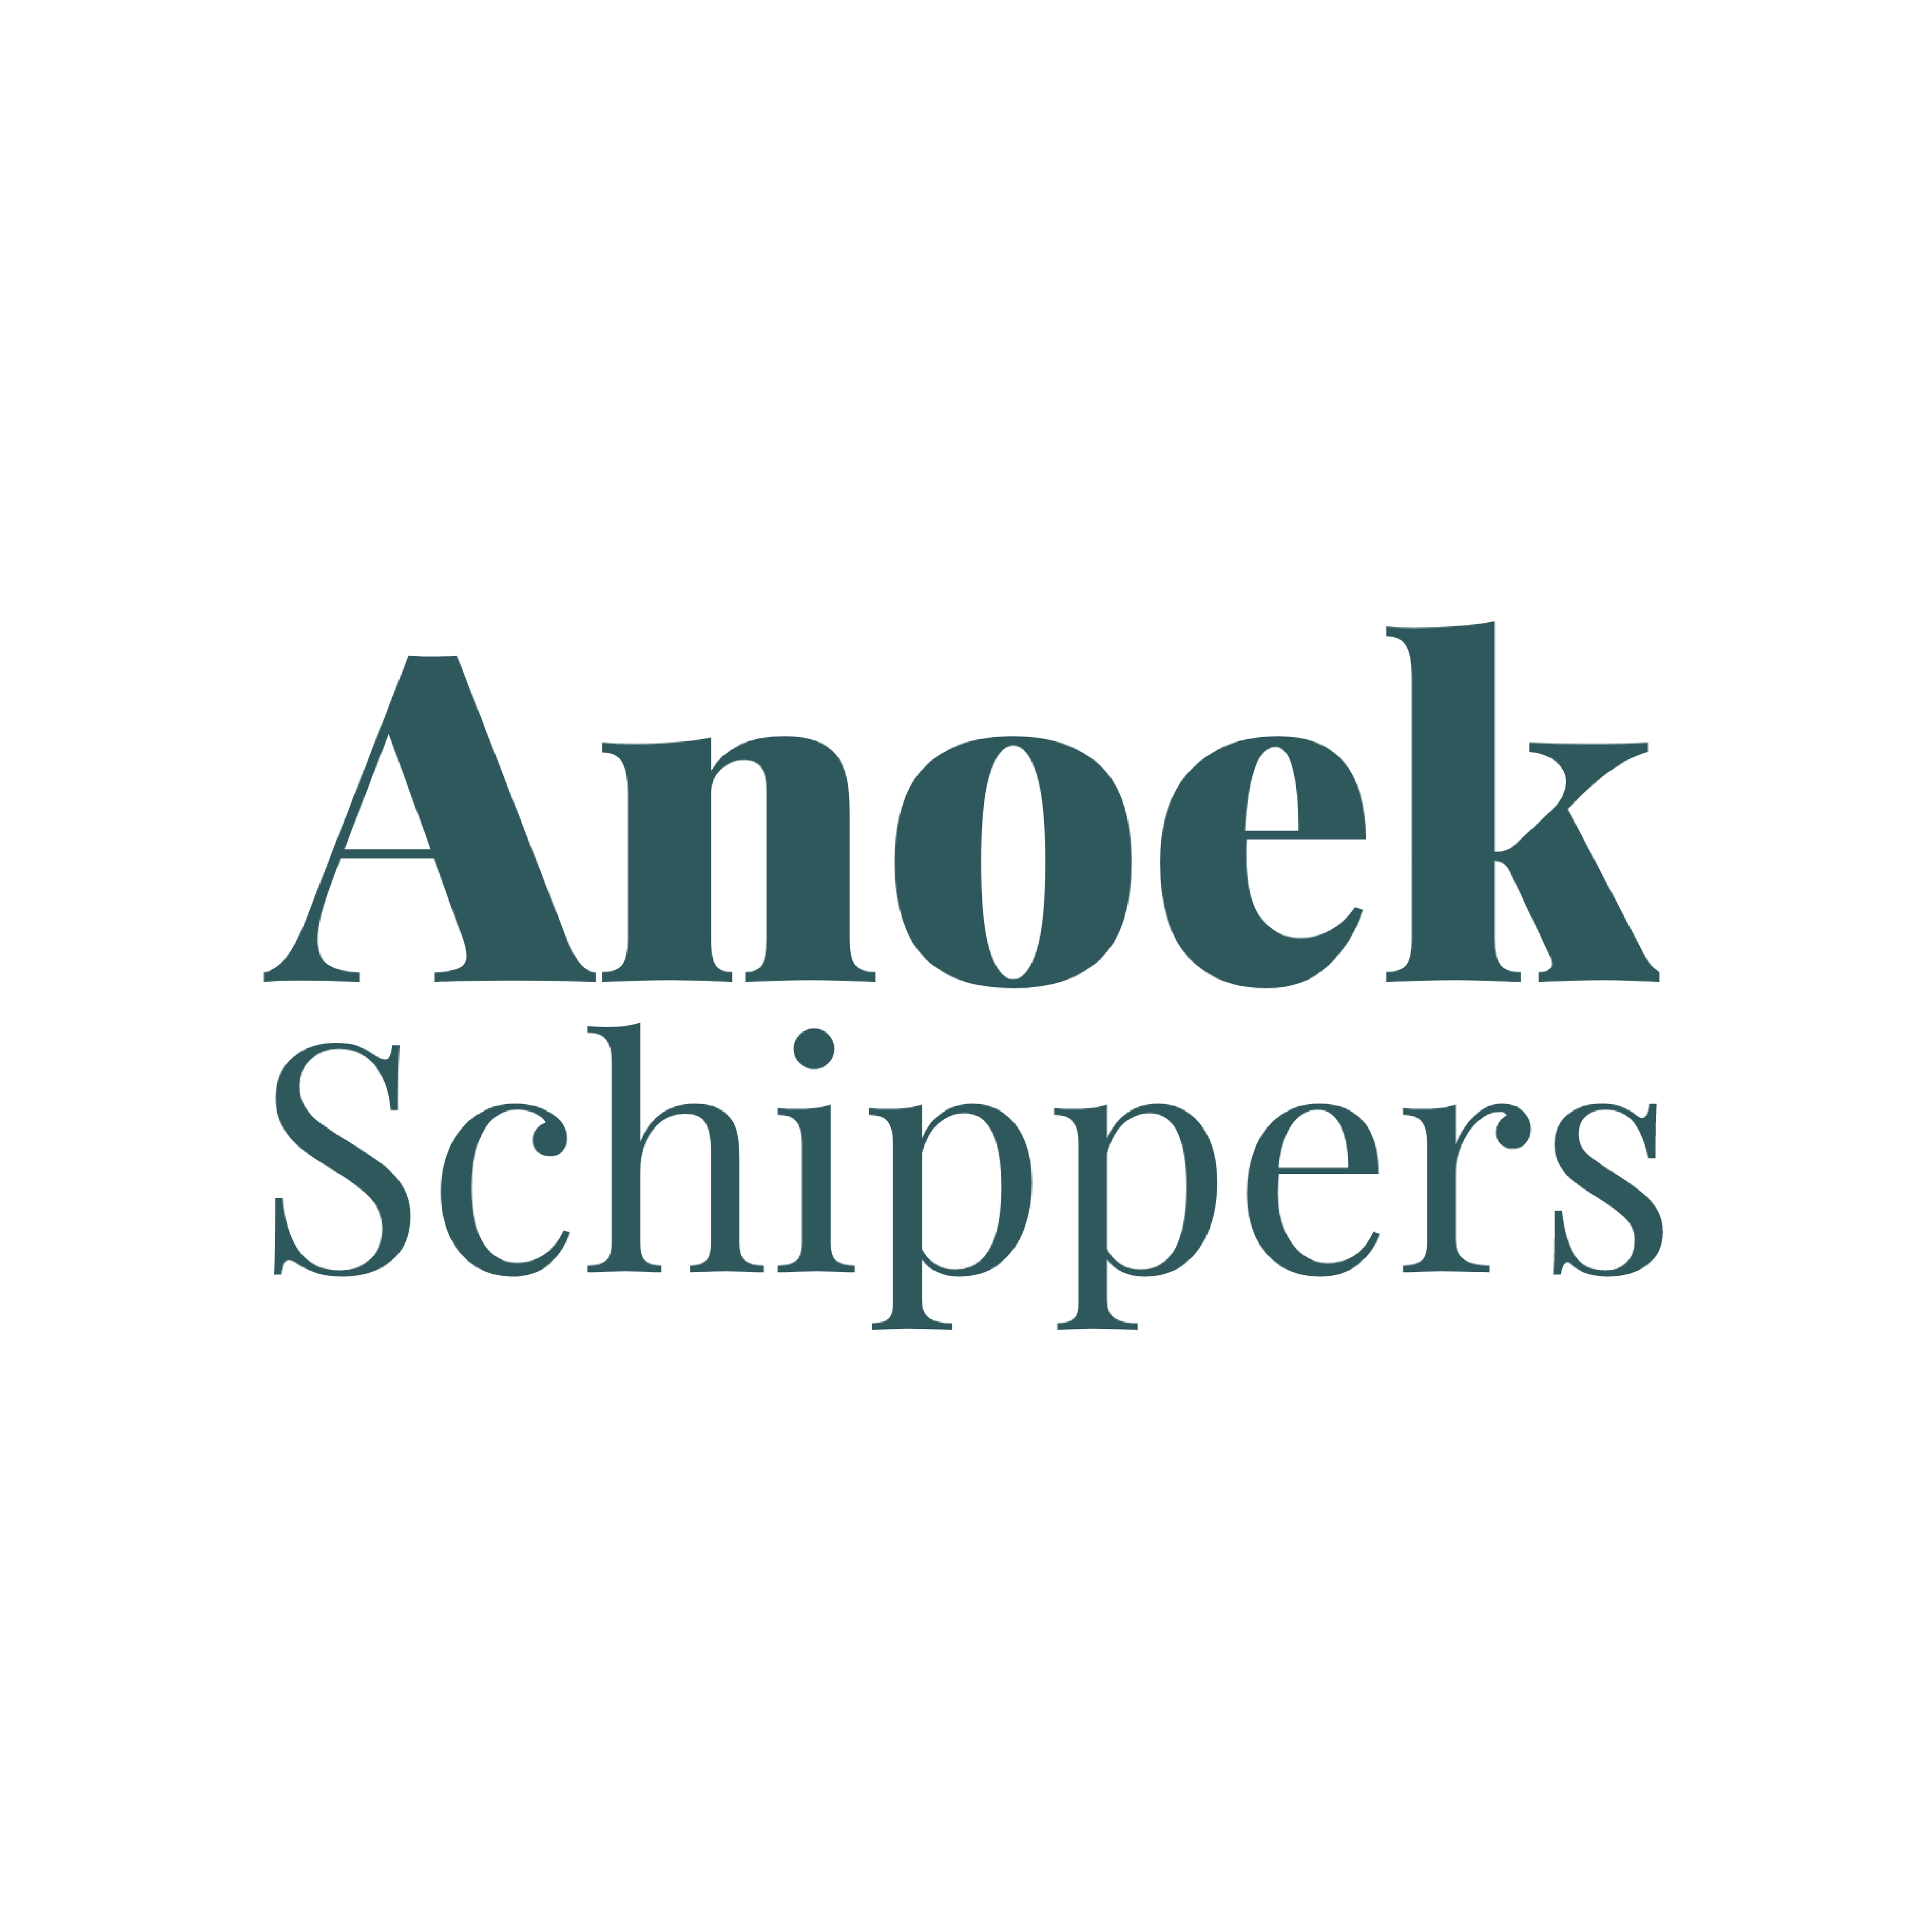 Anoek Schippers